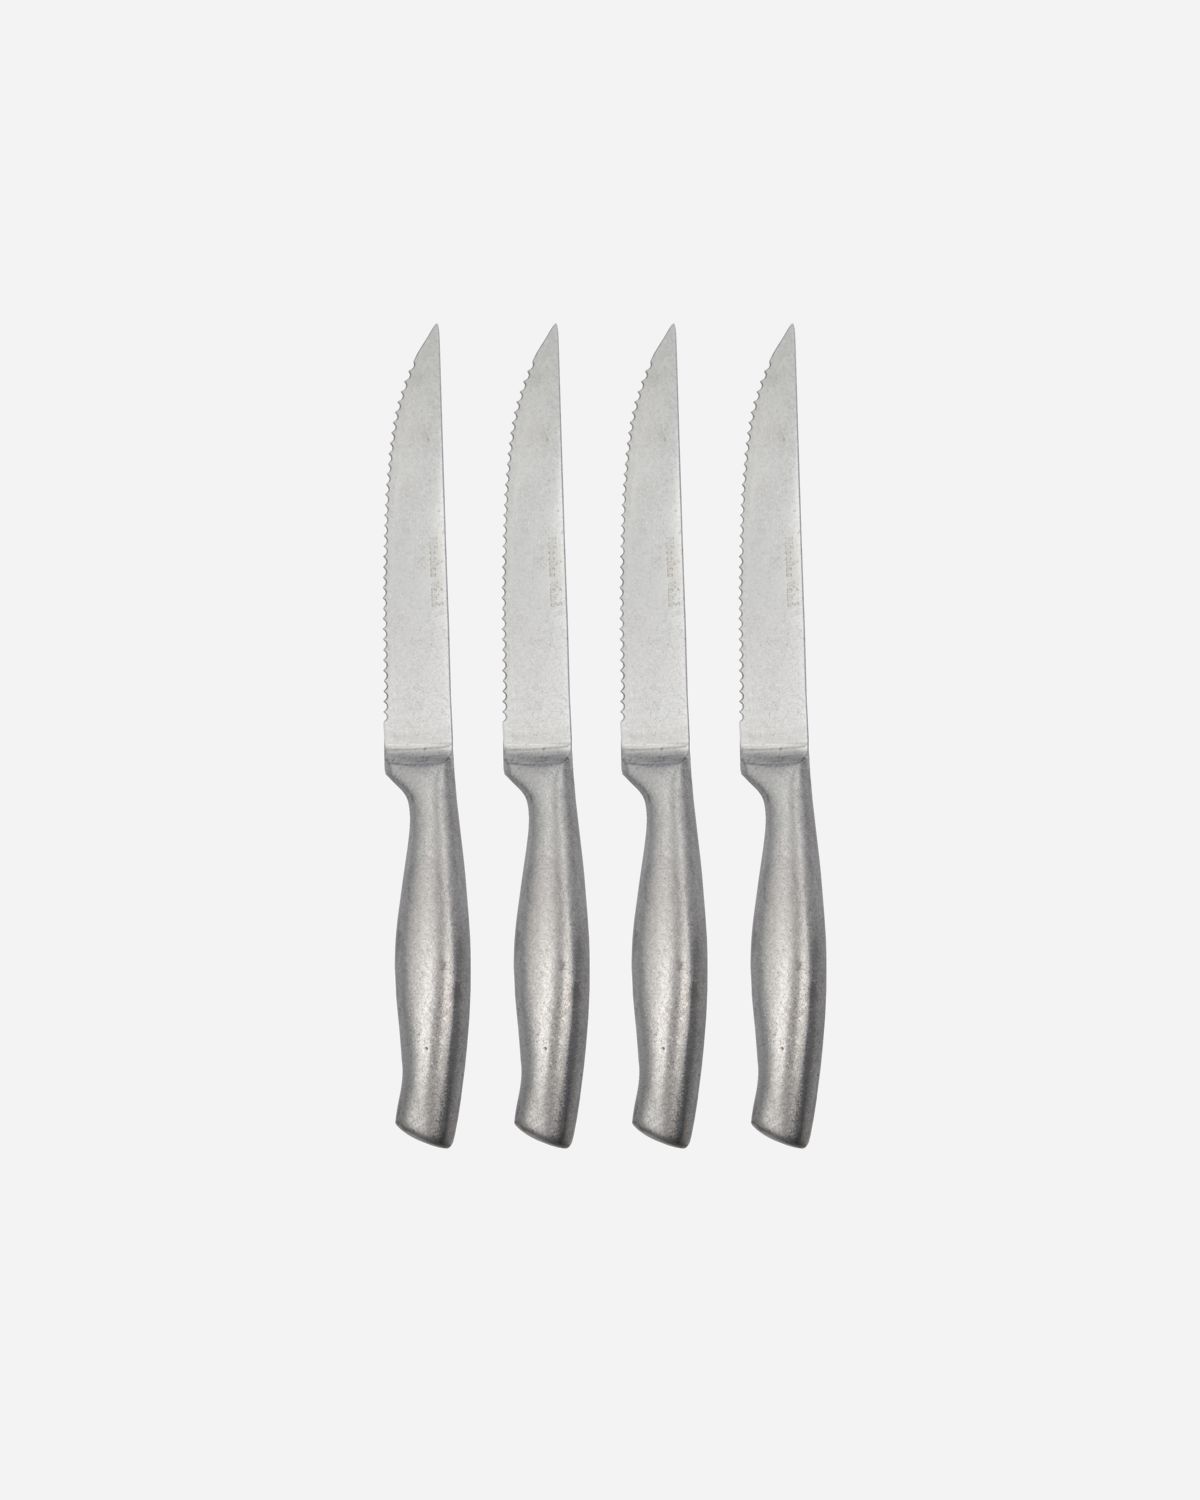 Butter Knife/Spreader, Nicolas Vahe - THE PASTA MARKET